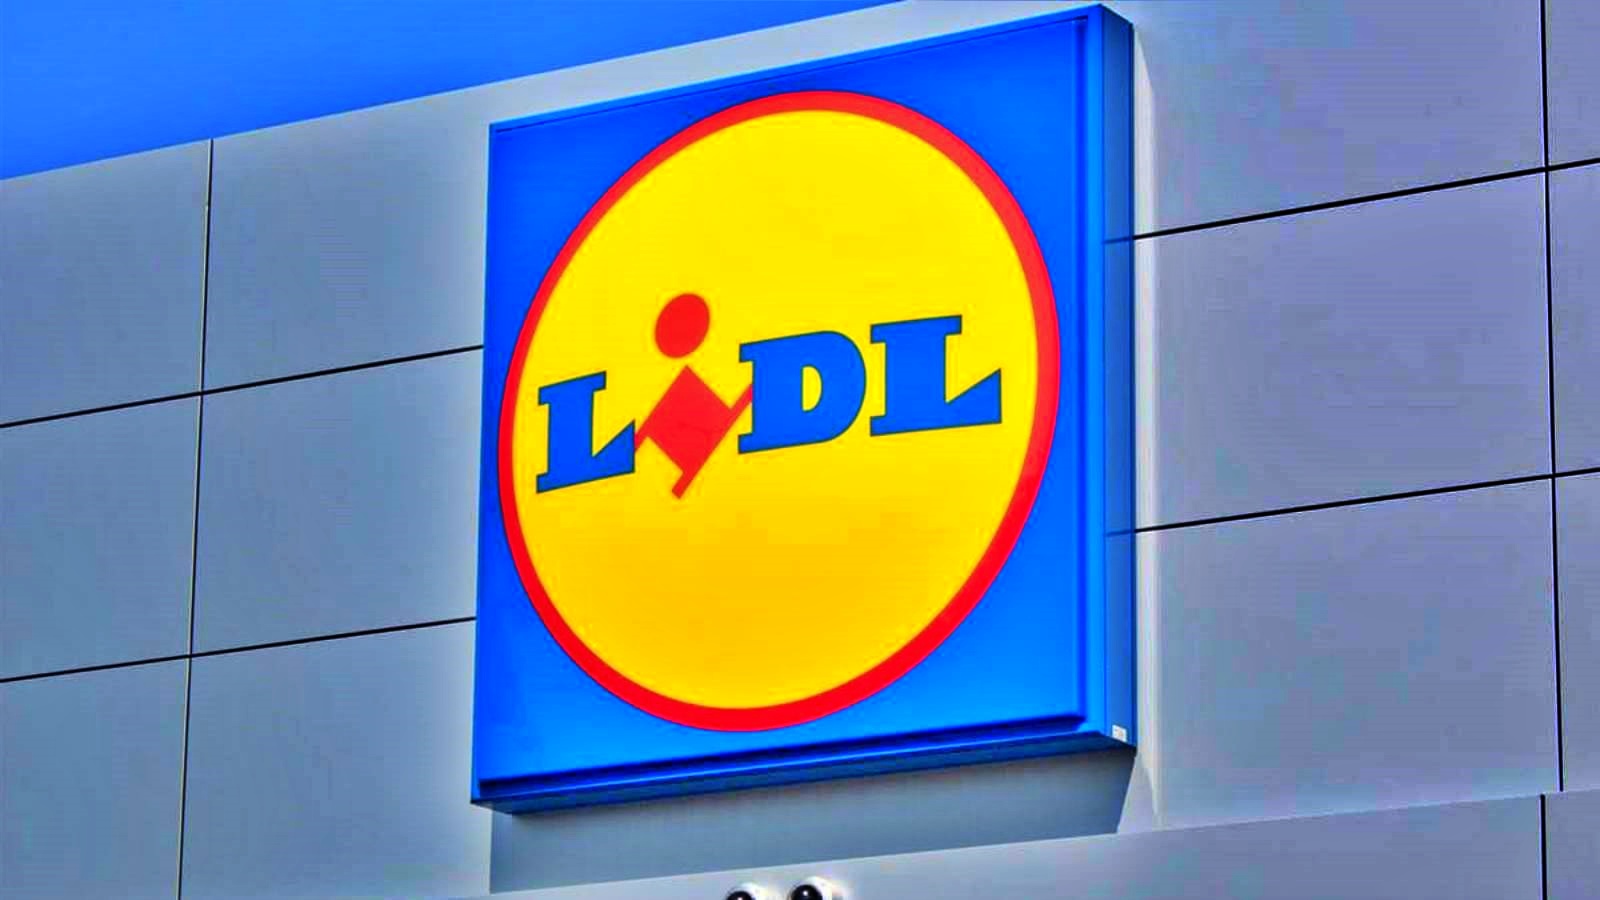 LIDL Romanian asiakkaat ilmoittivat uusista myymälämuutoksista